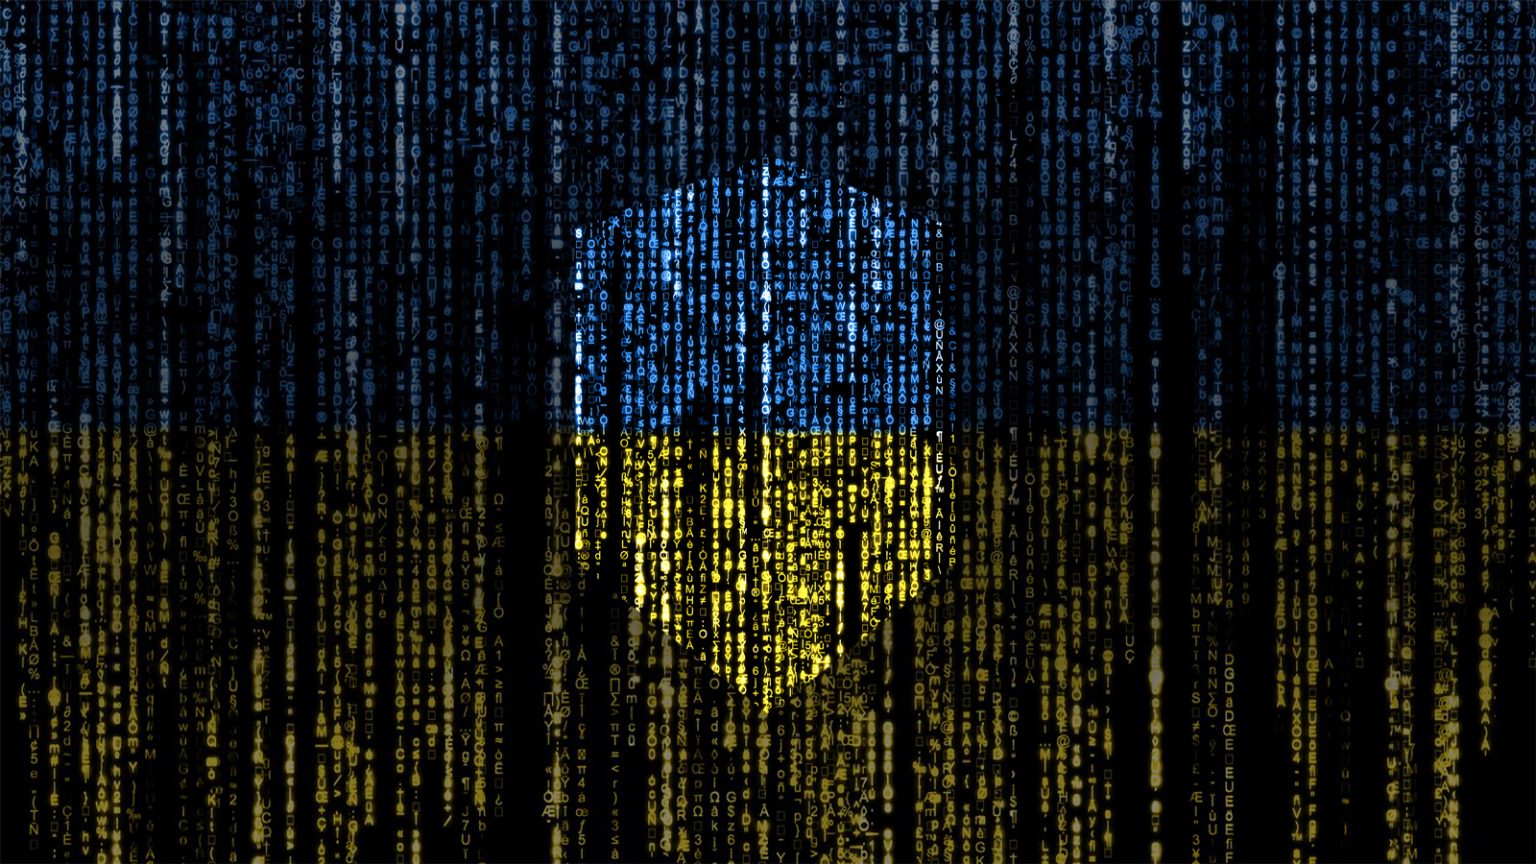 Ρωσία: Κυβερνητικοί χάκερ κατασκοπεύουν τους συμμάχους της Ουκρανίας, λέει η Microsoft